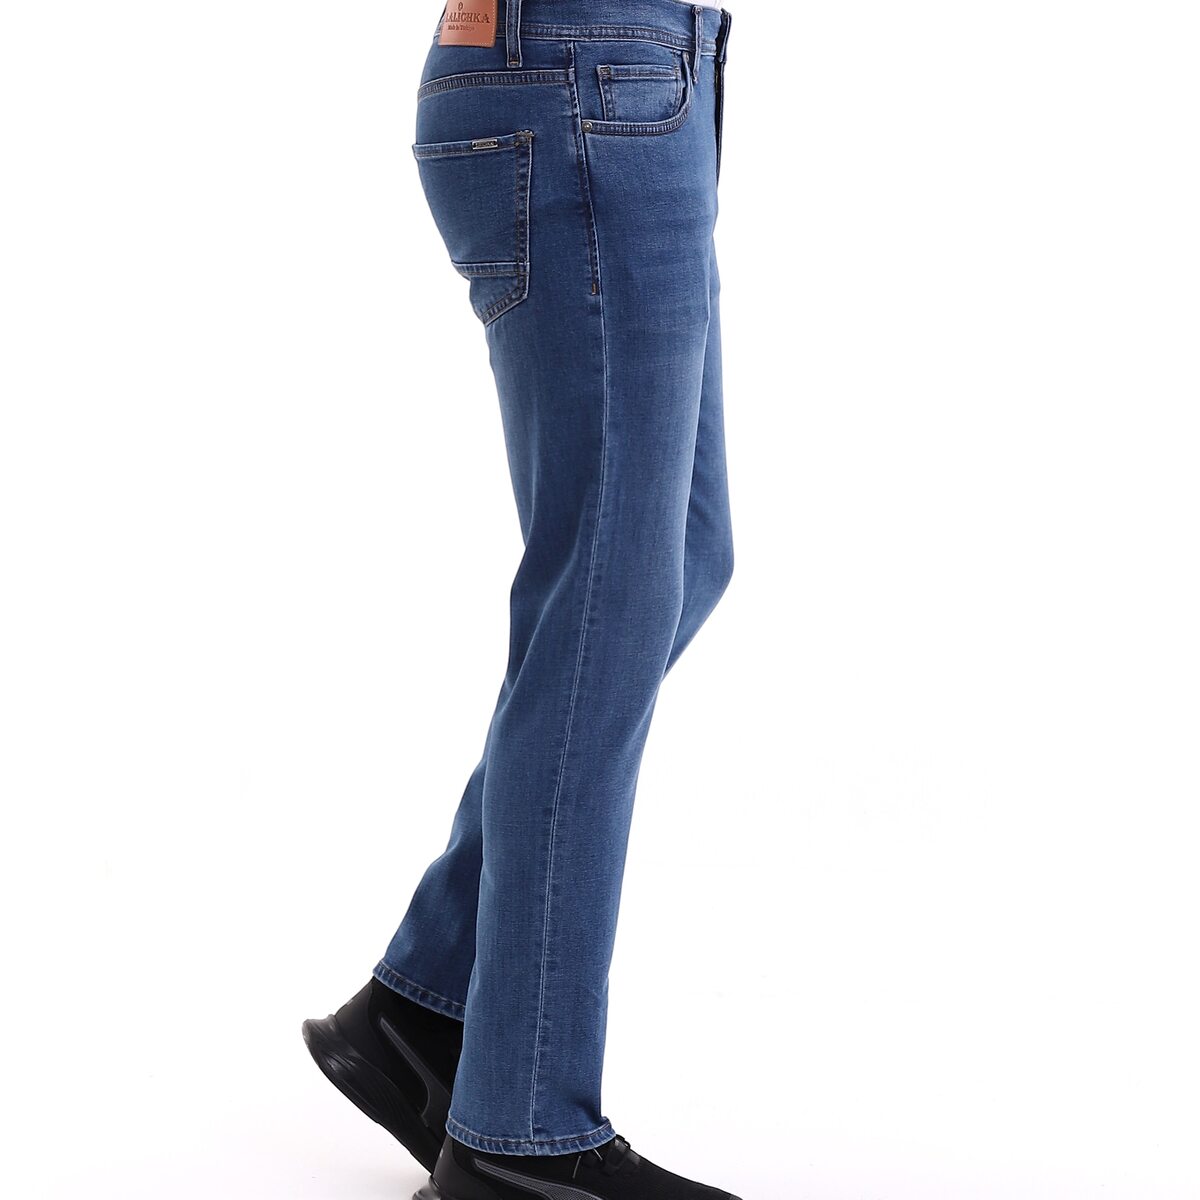 Брюки, наш завод под заказ принимает джинсовые продукты .  можете брат из нашего коллекция модели   женские и мужские много моделов есть    цены жен от 9 до 11 дол. мужские от 10 до 13 долар . цена зависит  от цена ткана и стирка арт.474041